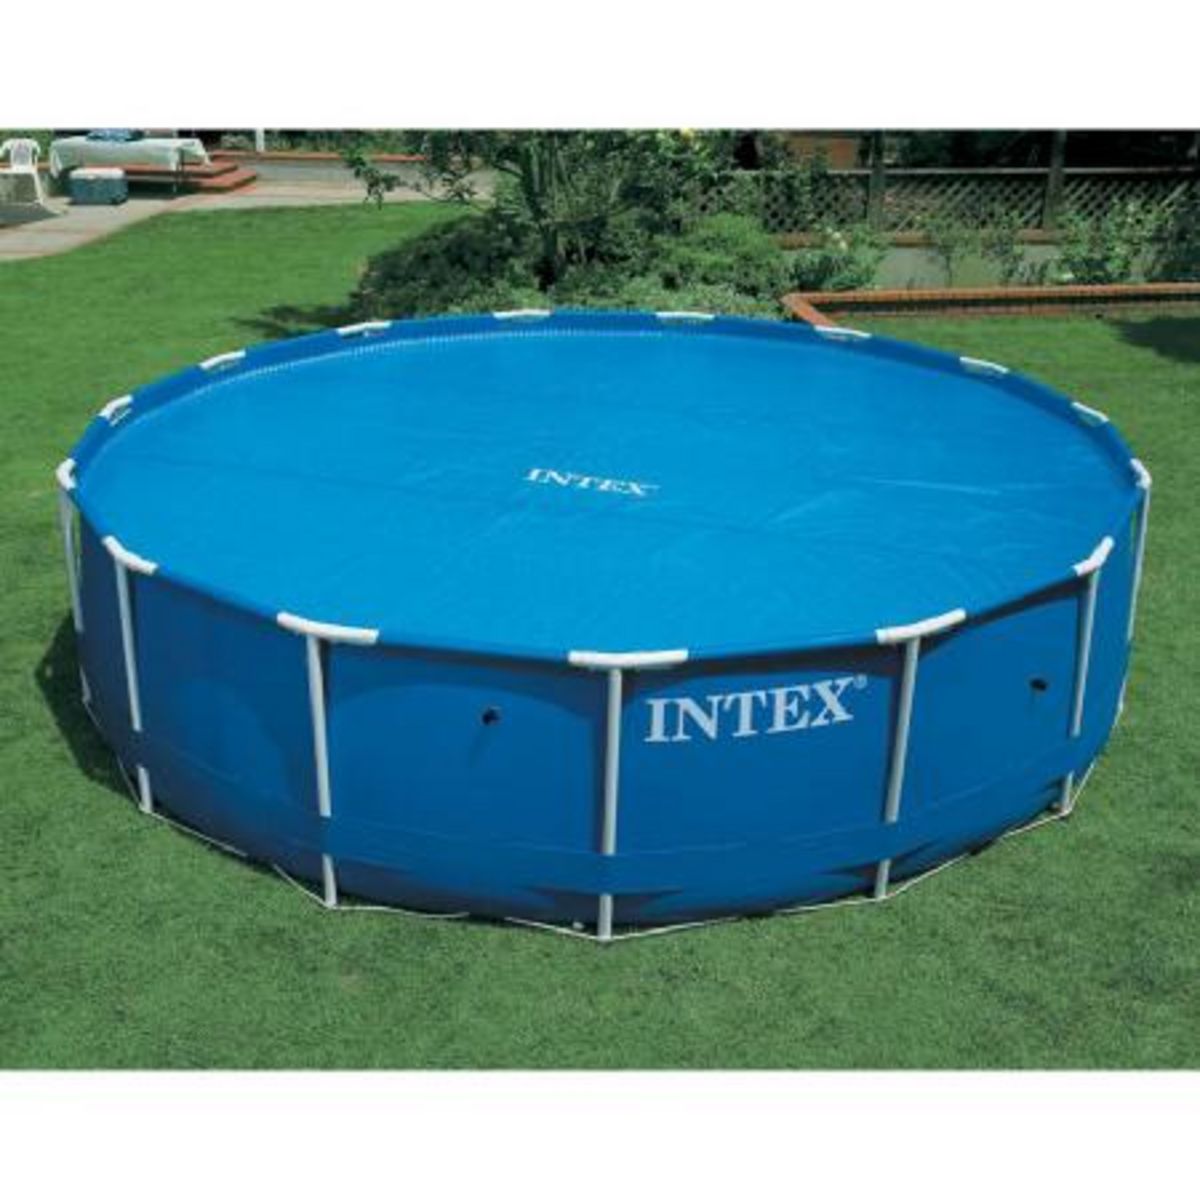 INTEX Bâche à bulles pour piscine diam 3,66m